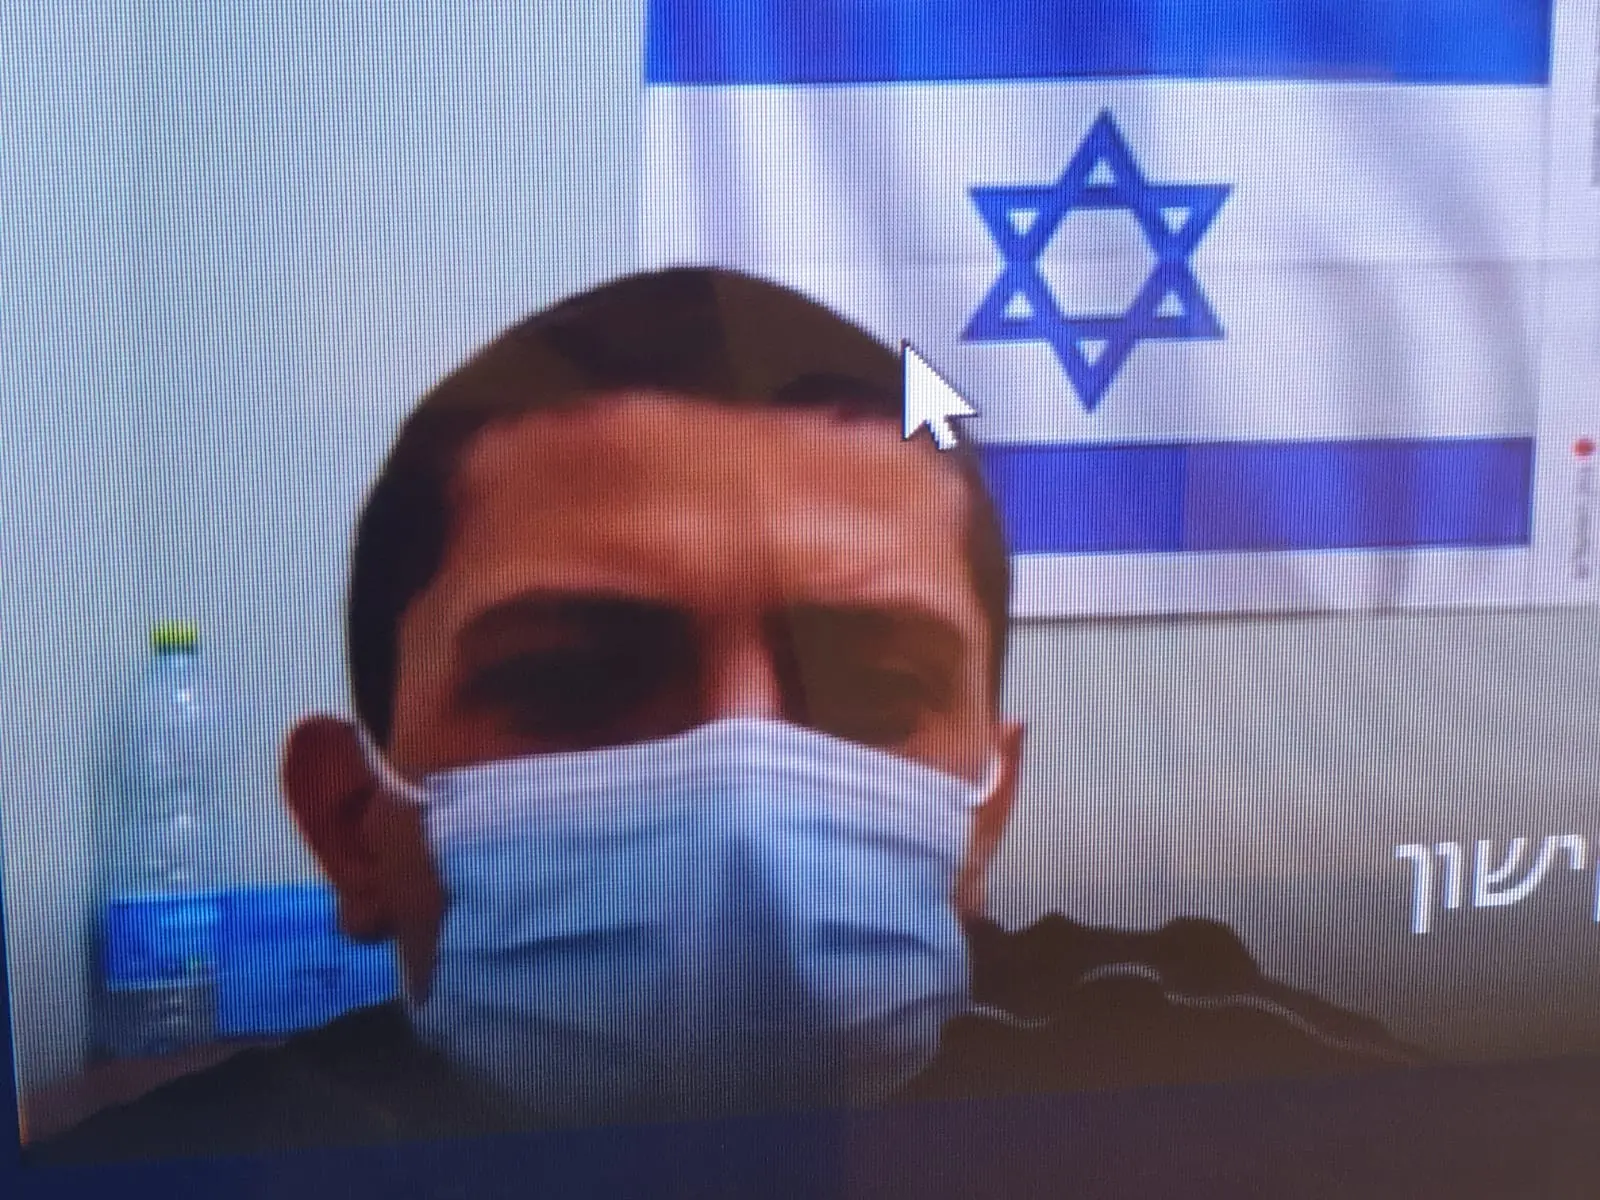 ג'מל אבו ג'ודה תושב המשולש הואשם עם עוד שניים ברצח כפול בטול כרם, בימ"ש המחוזי בחיפה,7.10.21